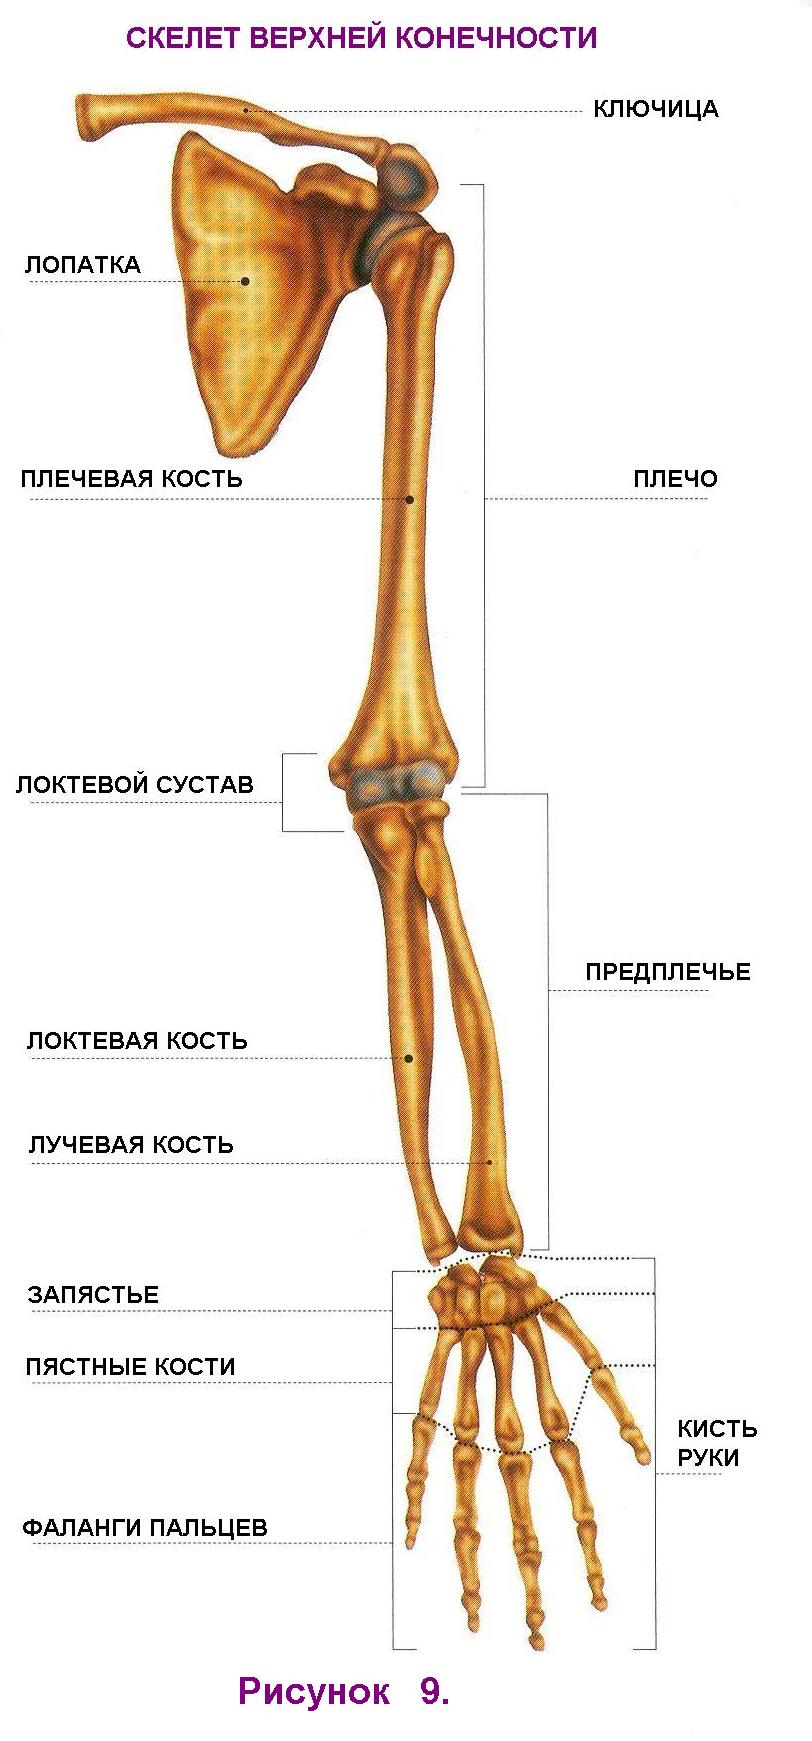 7 скелет конечностей. Скелет верхней конечности плечевая кость. Остеология кости верхней конечности. Кости пояса верхней конечности плечевая и лучевая. Плечевая кость и предплечье.